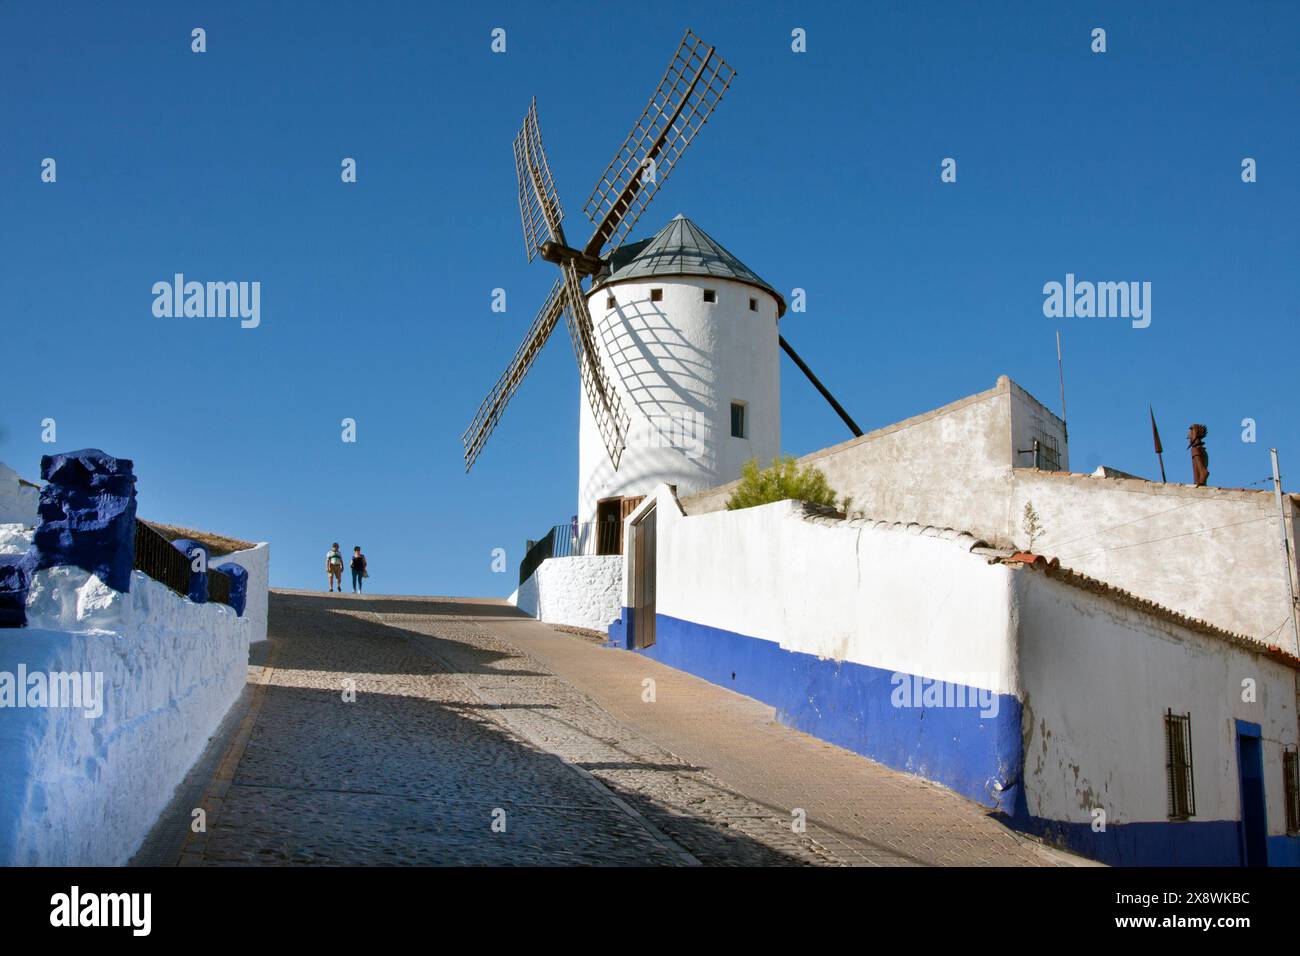 Campo de Criptana et les moulins à vent sur la Ruta de Don Quijote, province de Cuidad Real, Castilla la Mancha, Espagne Banque D'Images